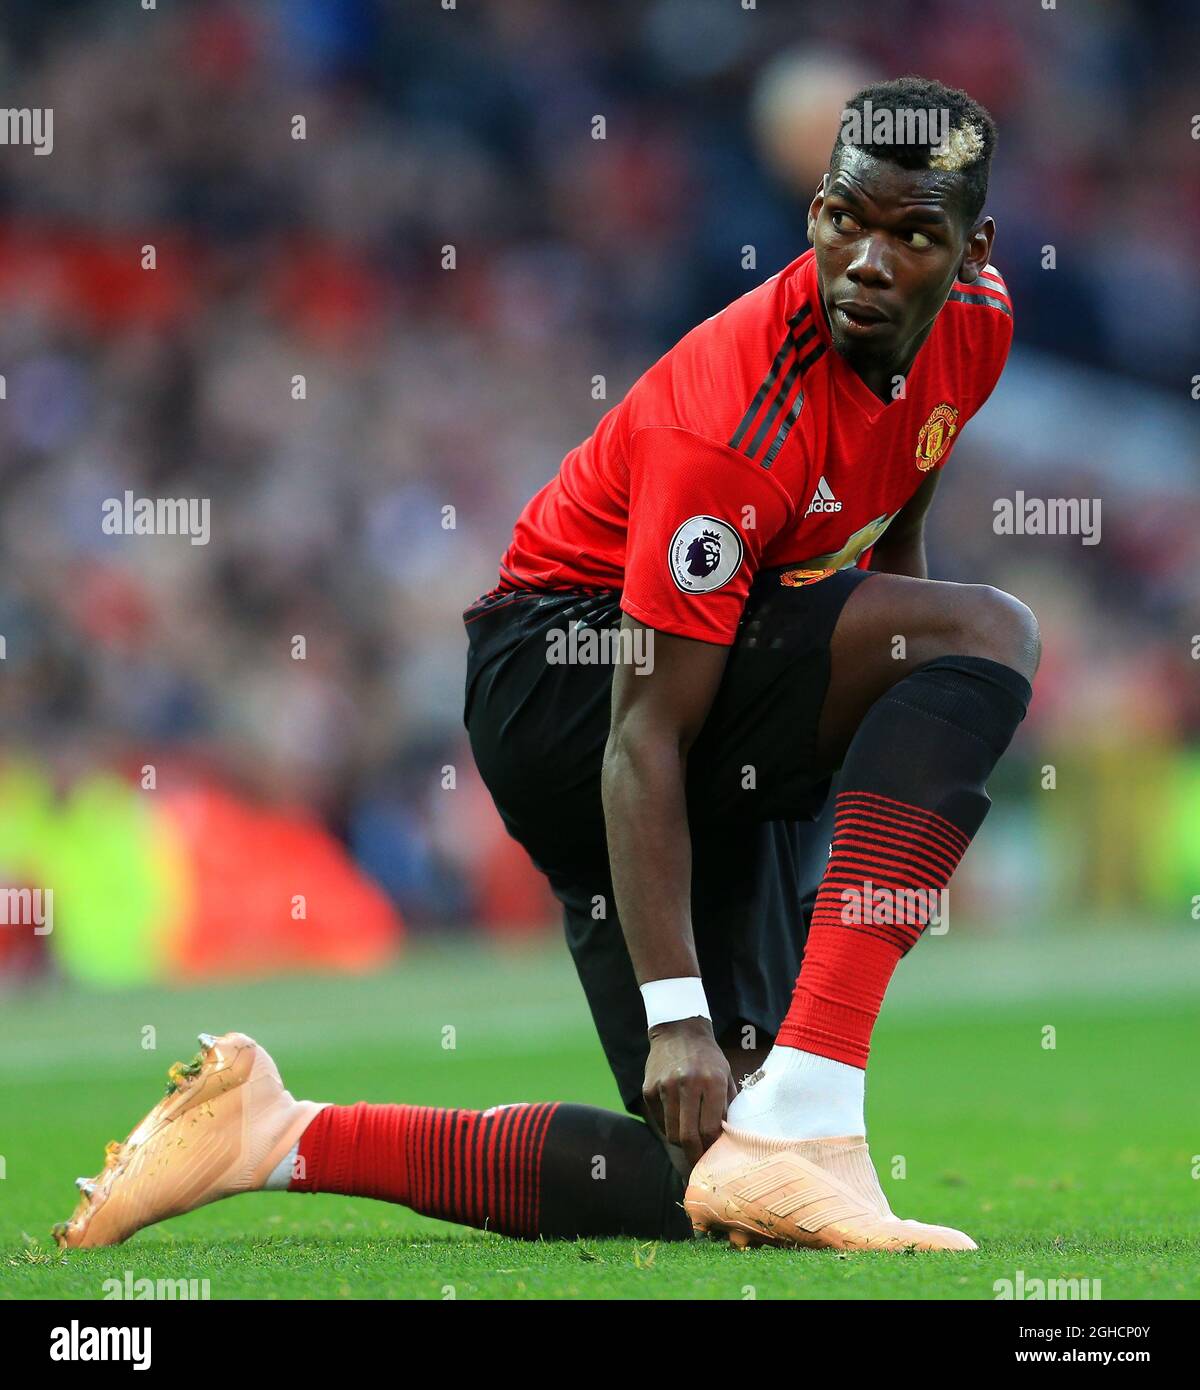 Pogba, del Manchester United, ajusta sus botas durante el partido de la Premier League en el Old Trafford, Manchester. Foto fecha 6th de octubre de 2018. El crédito de la